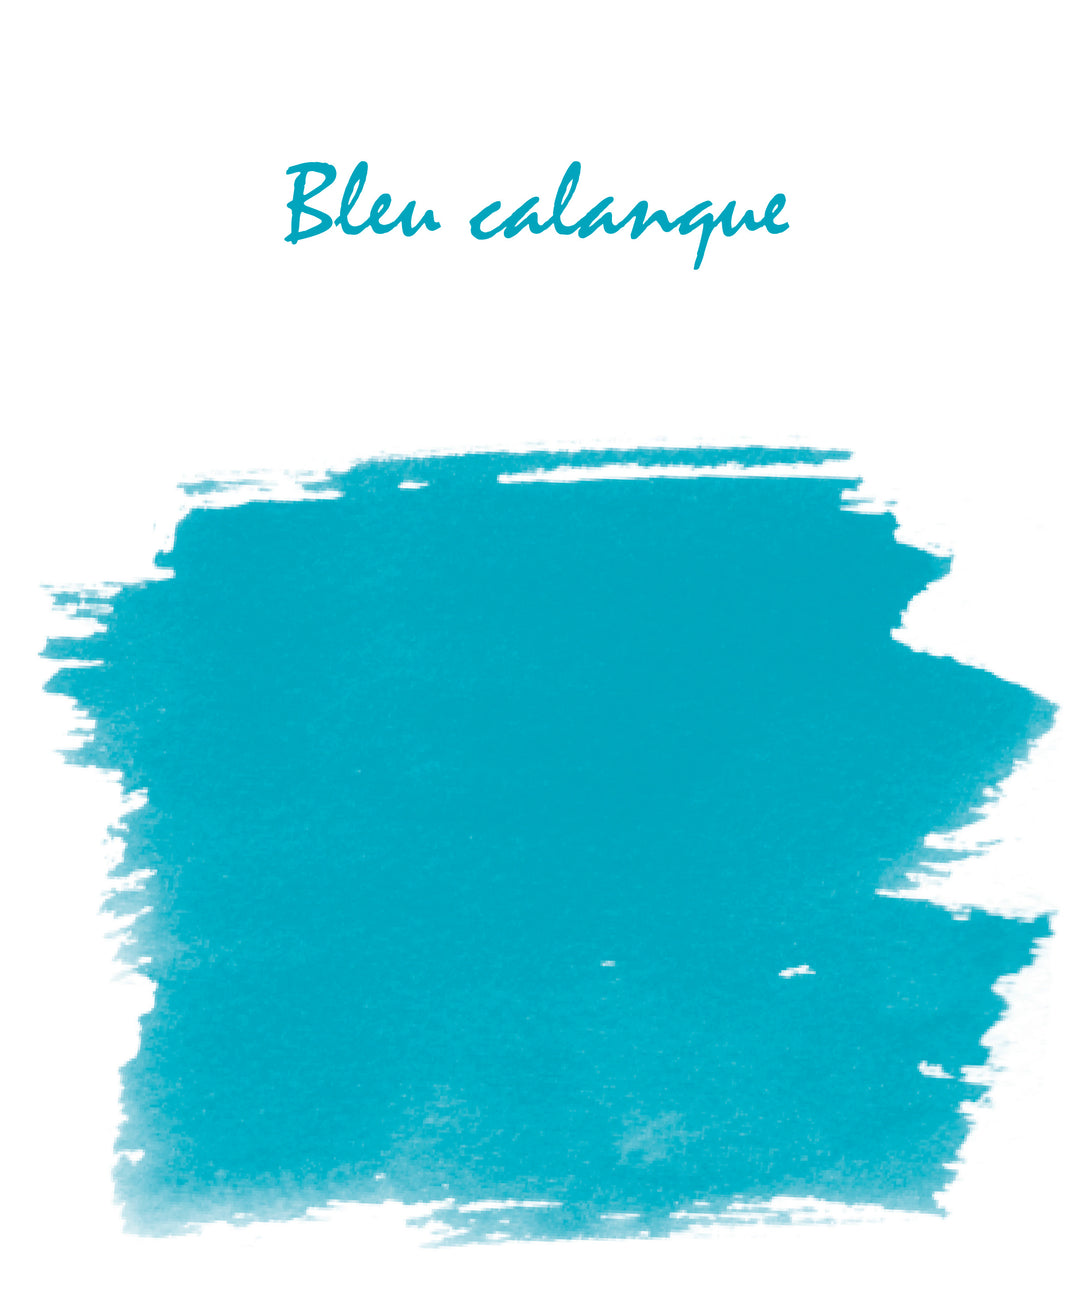 Herbin Standard Ink # 14 - Bleu Calanque